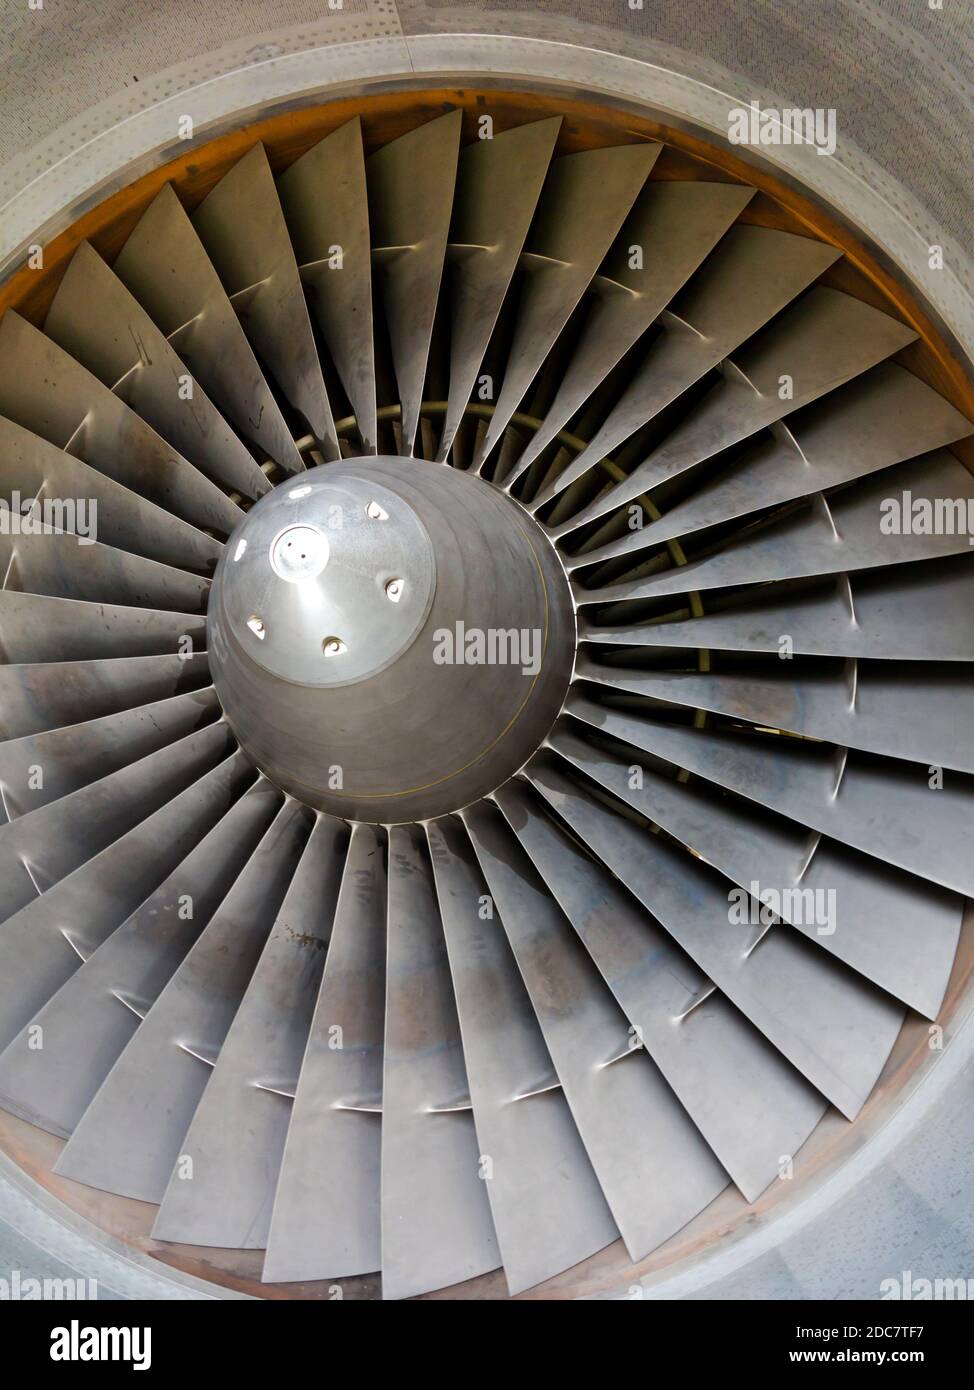 Dettaglio di lame metalliche su un motore per aerei a reazione. Foto Stock